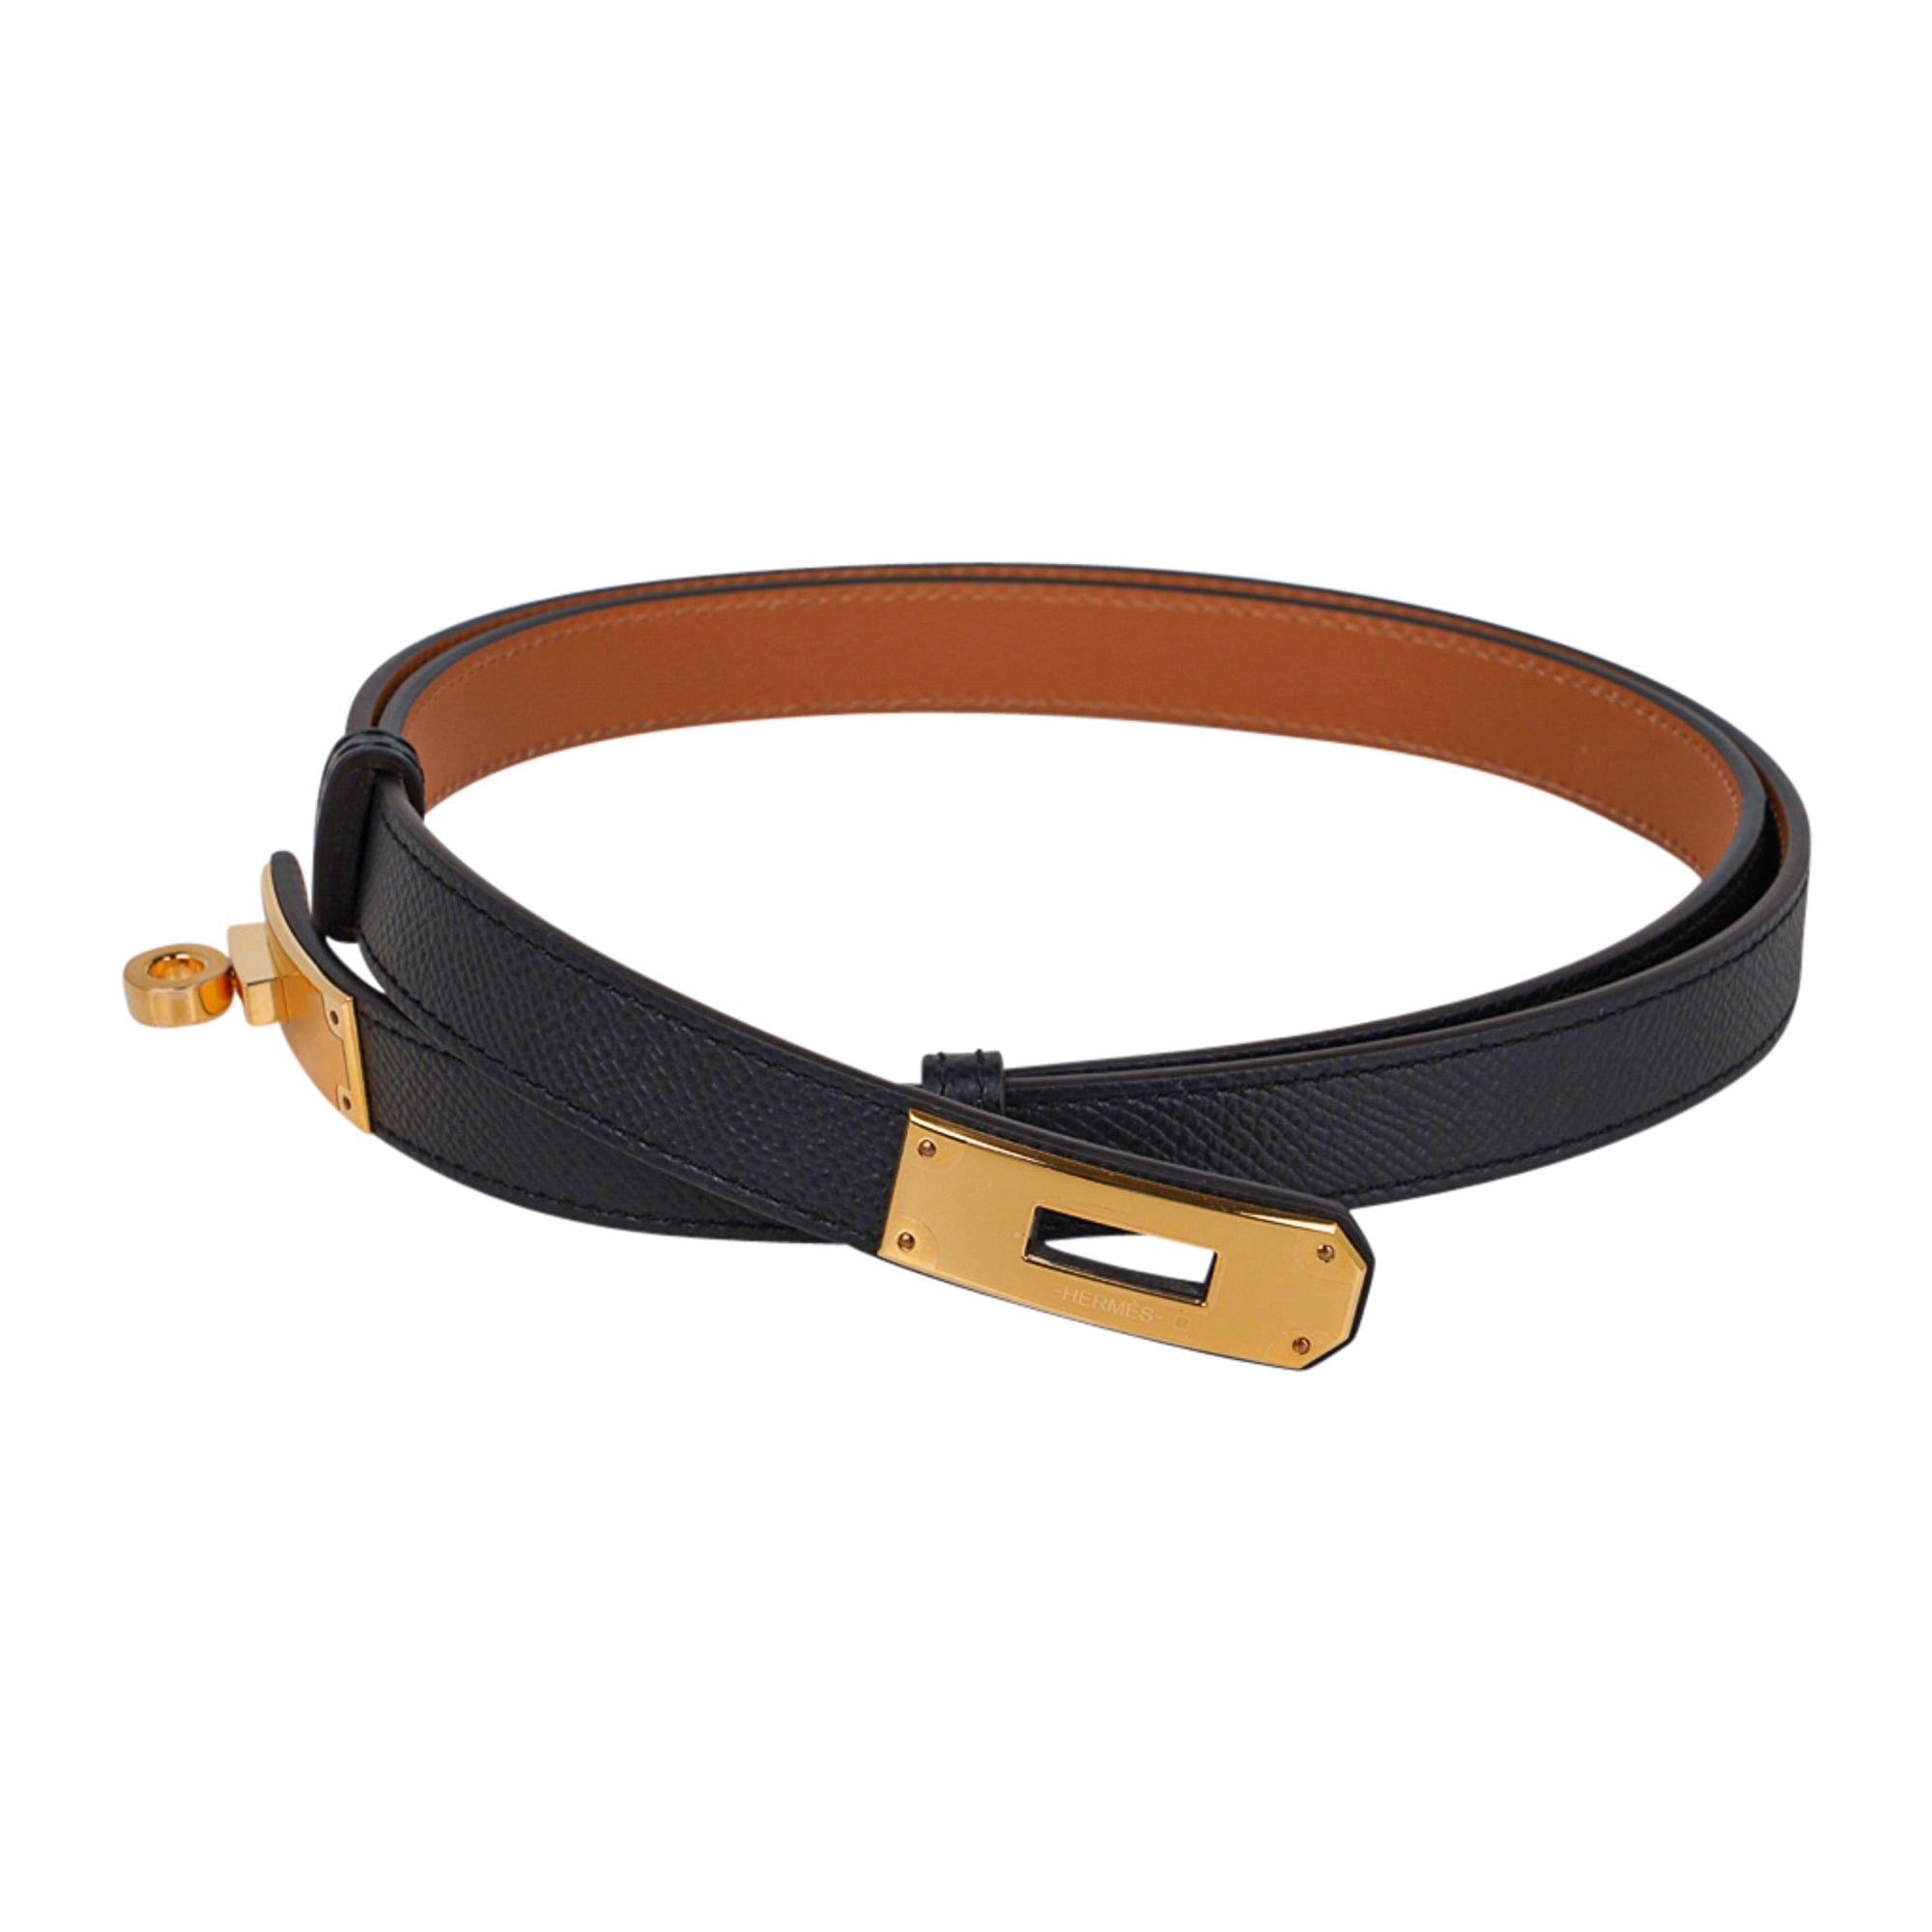 Replica Hermes Kelly 18 Belt In White Epsom Leather